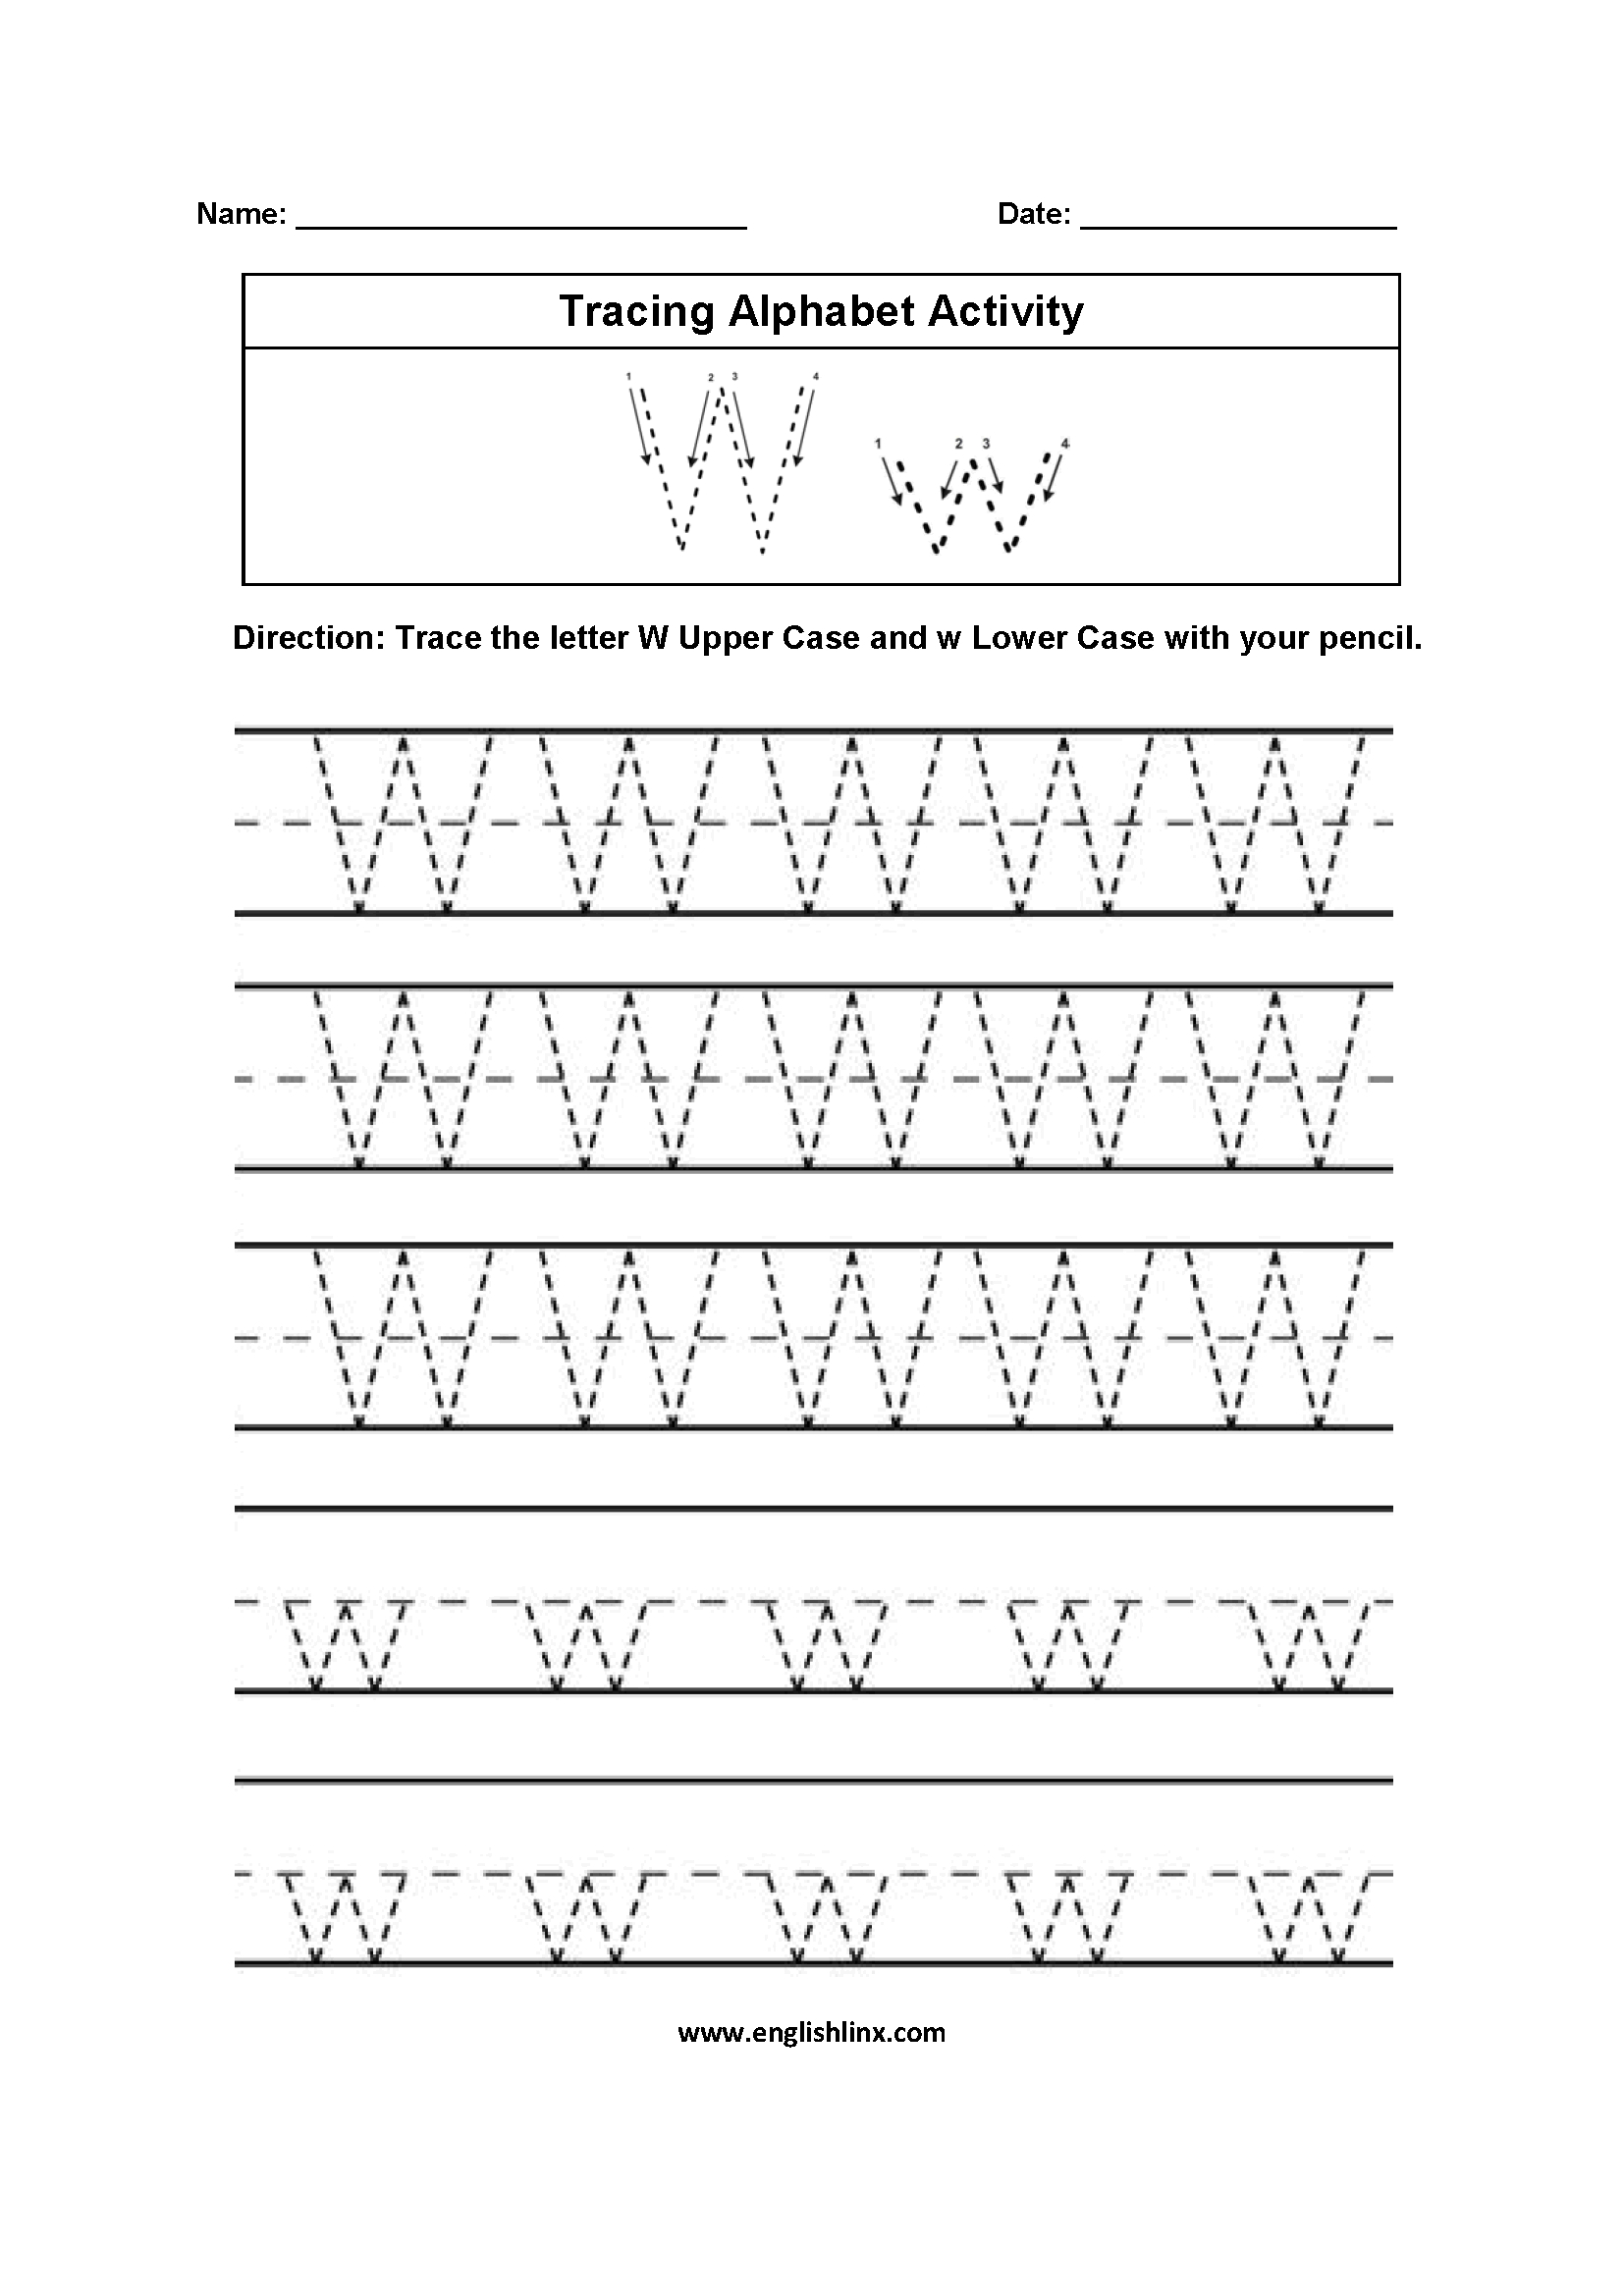 Alphabet Worksheet Kidzone | Printable Worksheets And intended for Letter E Worksheets Kidzone